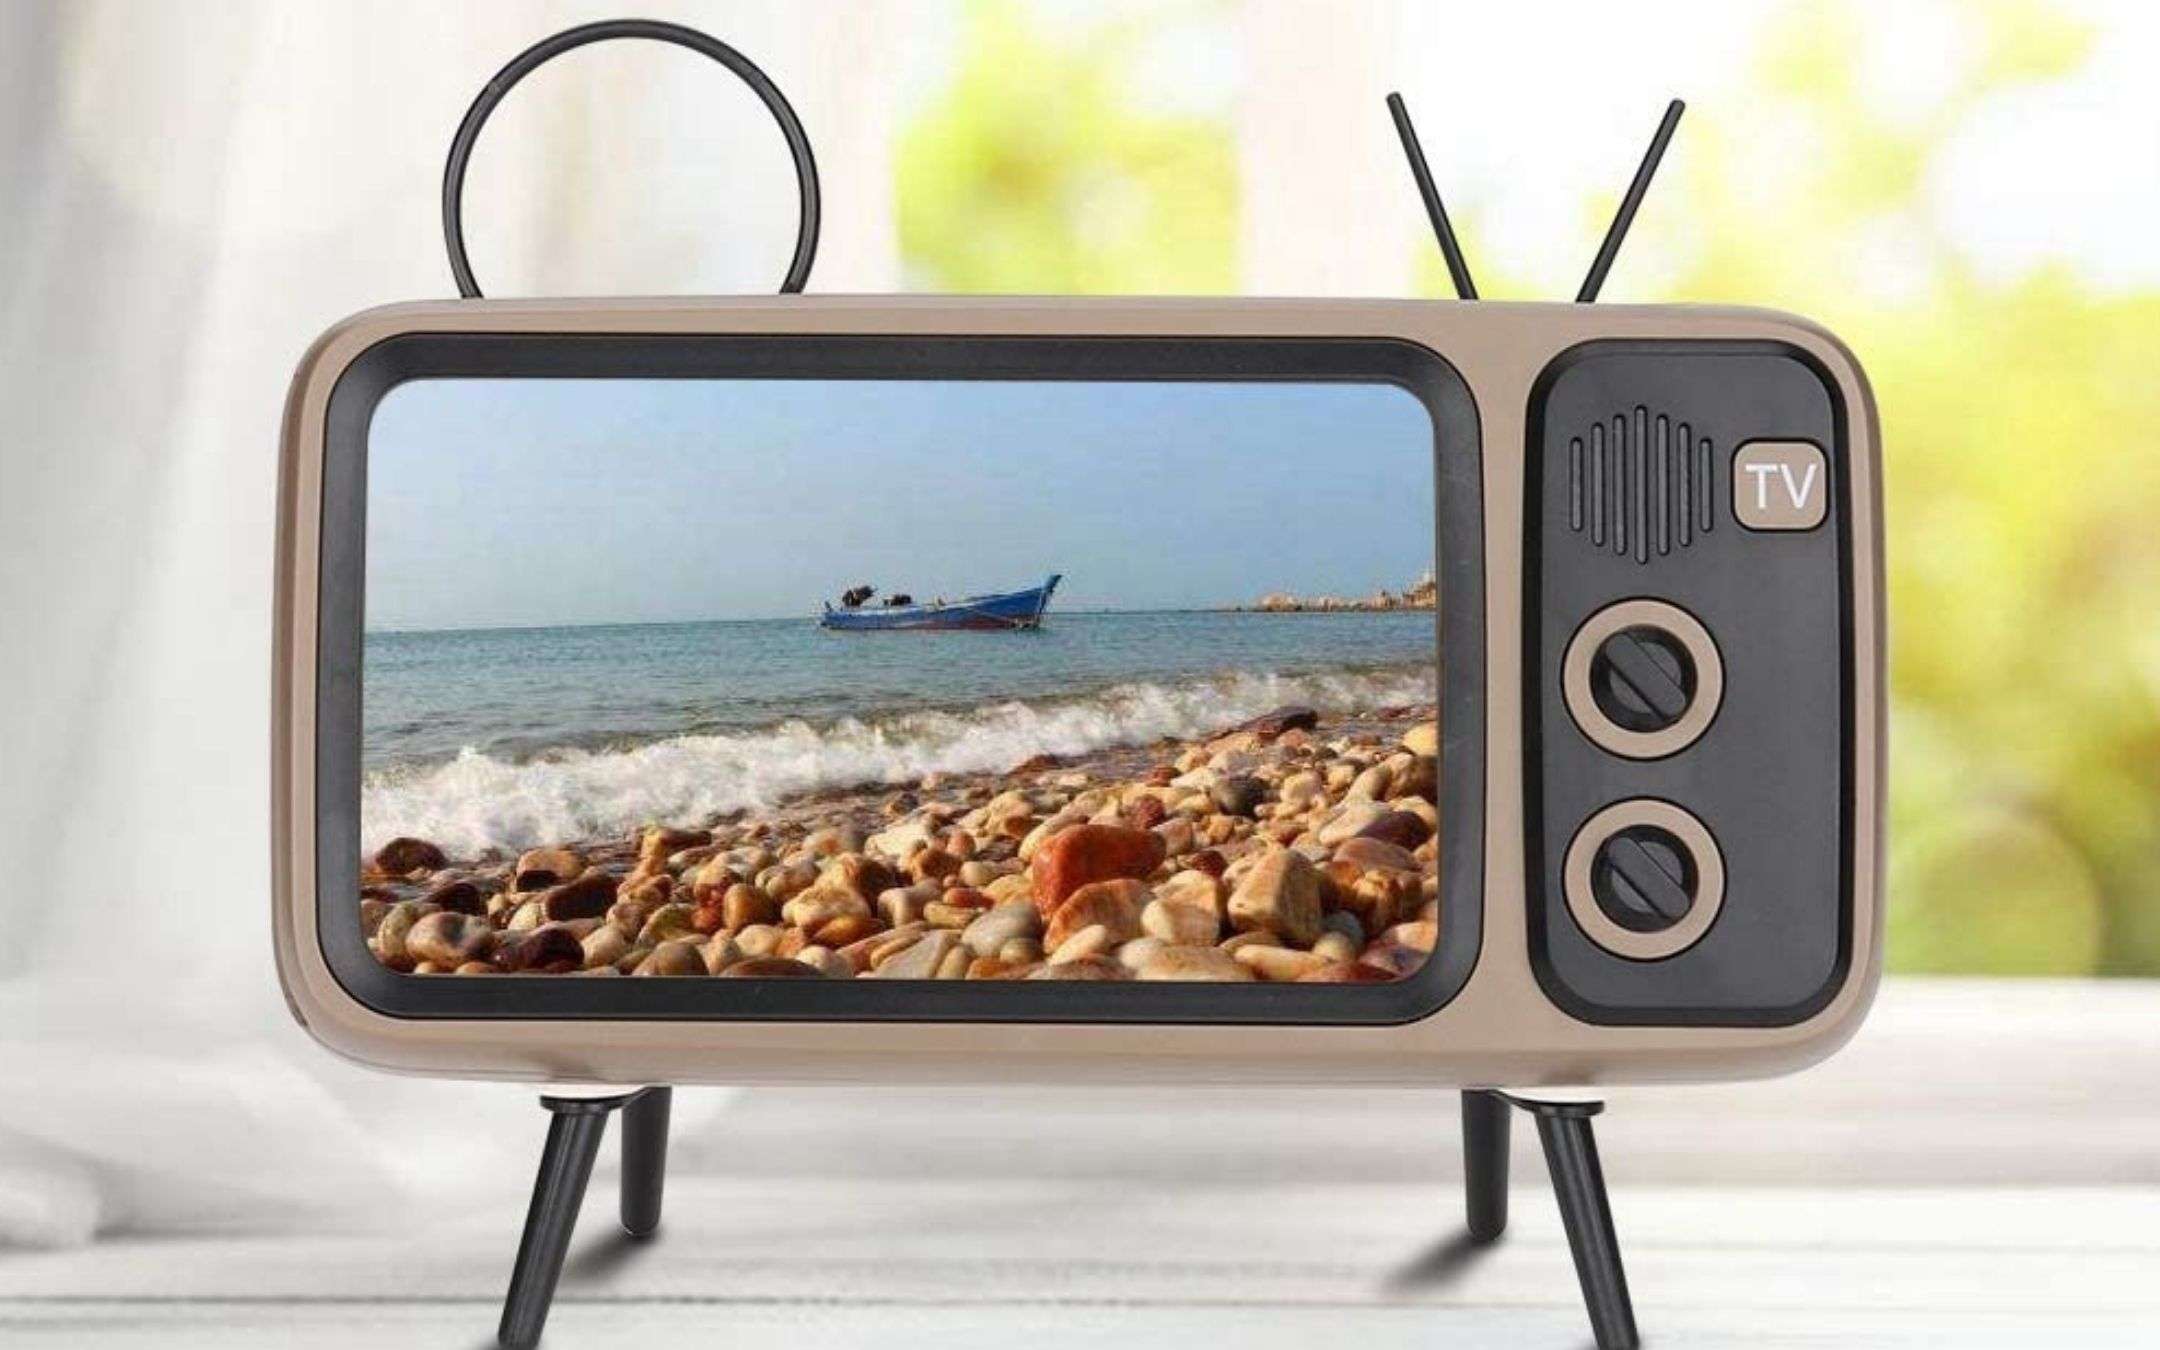 Spettacolare speaker Bluetooth TV retrò: prezzo WOW su Amazon (16€)